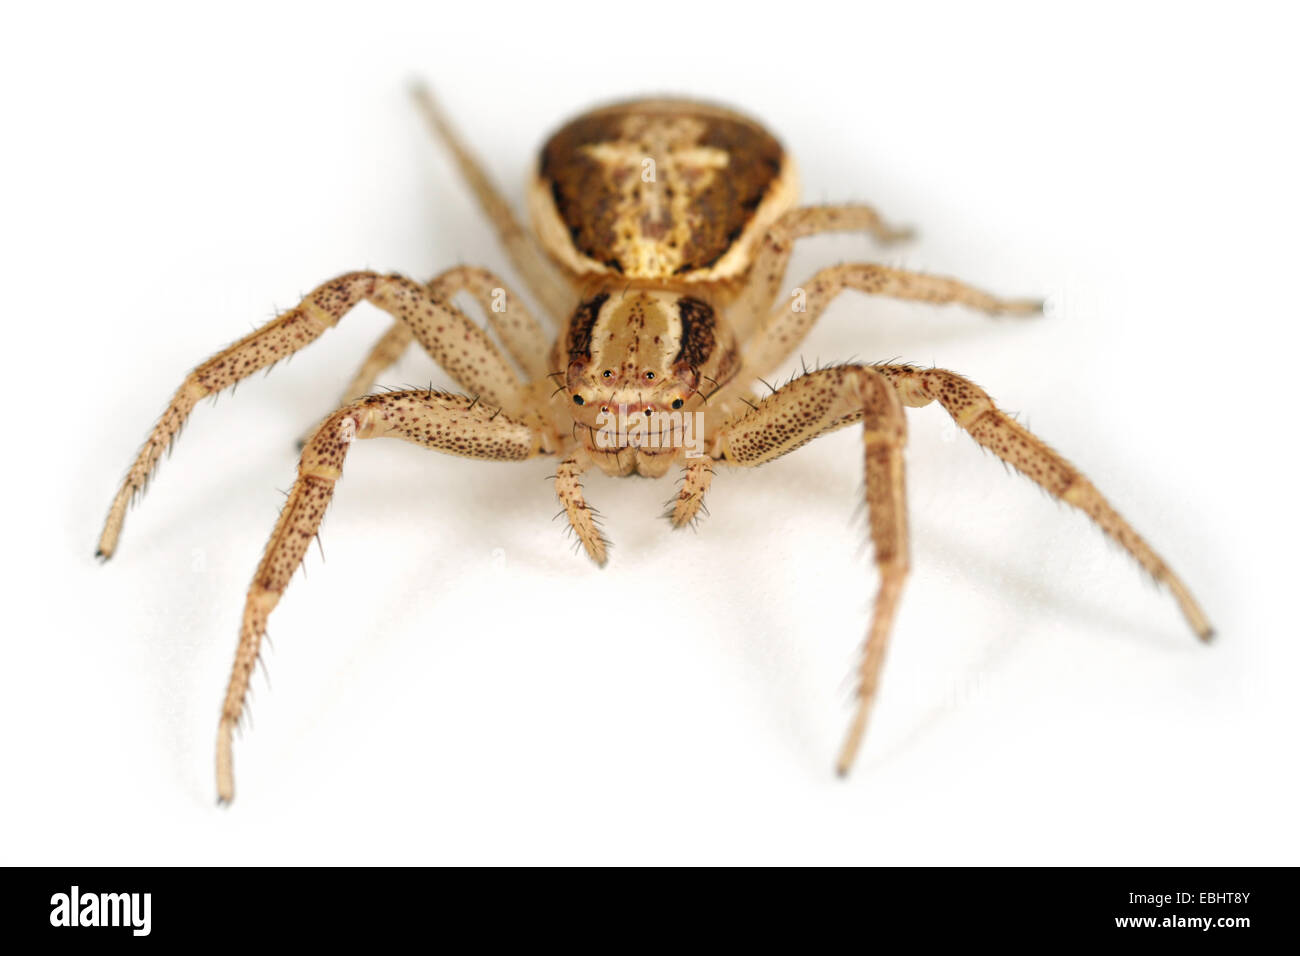 (Xysticus ulmi) Femelle Xysticus ulmi araignée sur fond blanc. Famille Thomisidae, araignées-crabes. Banque D'Images